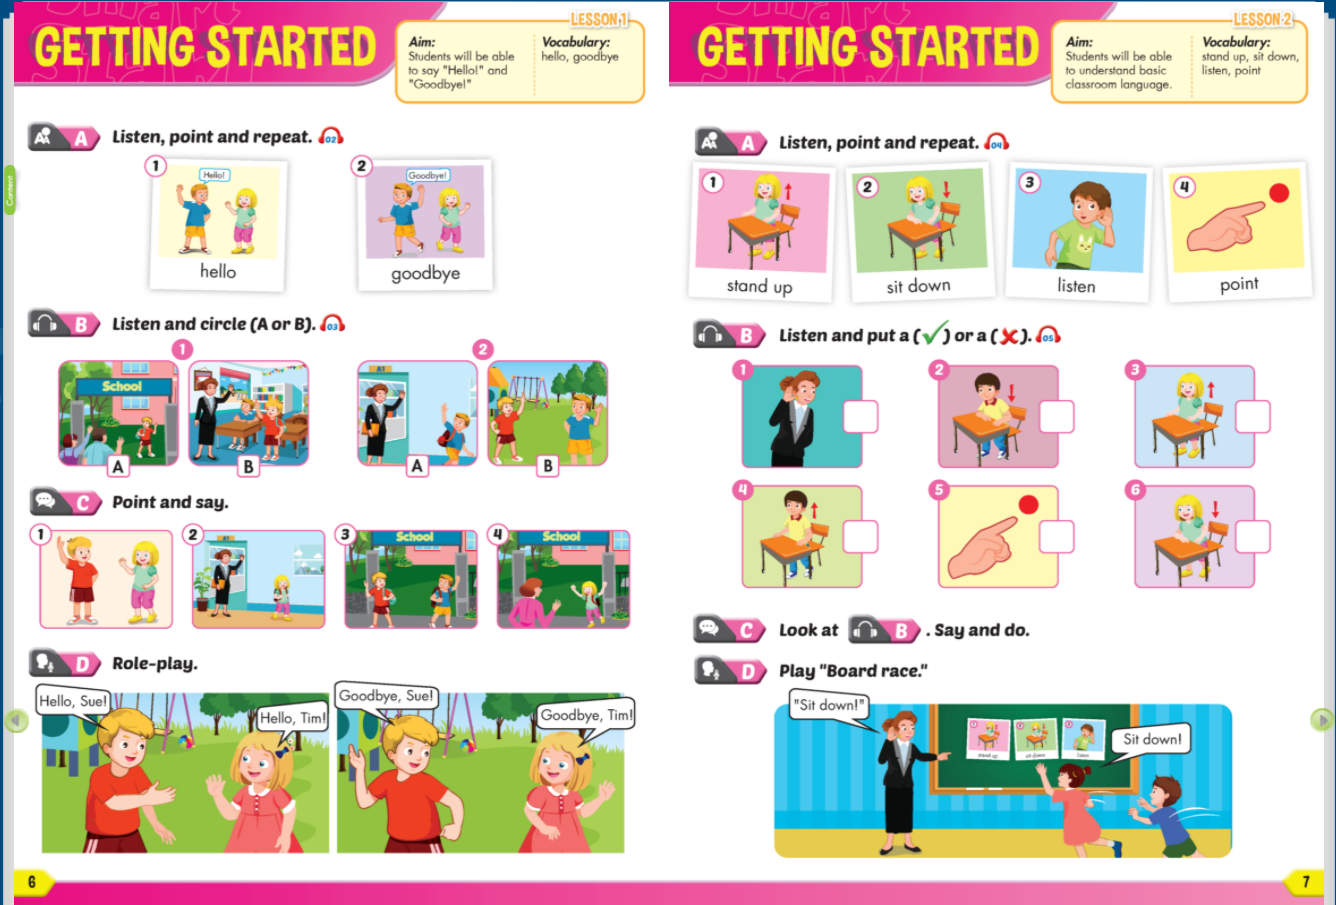 [E-BOOK] i-Learn Smart Start Listening & Speaking 1 Sách mềm sách học sinh